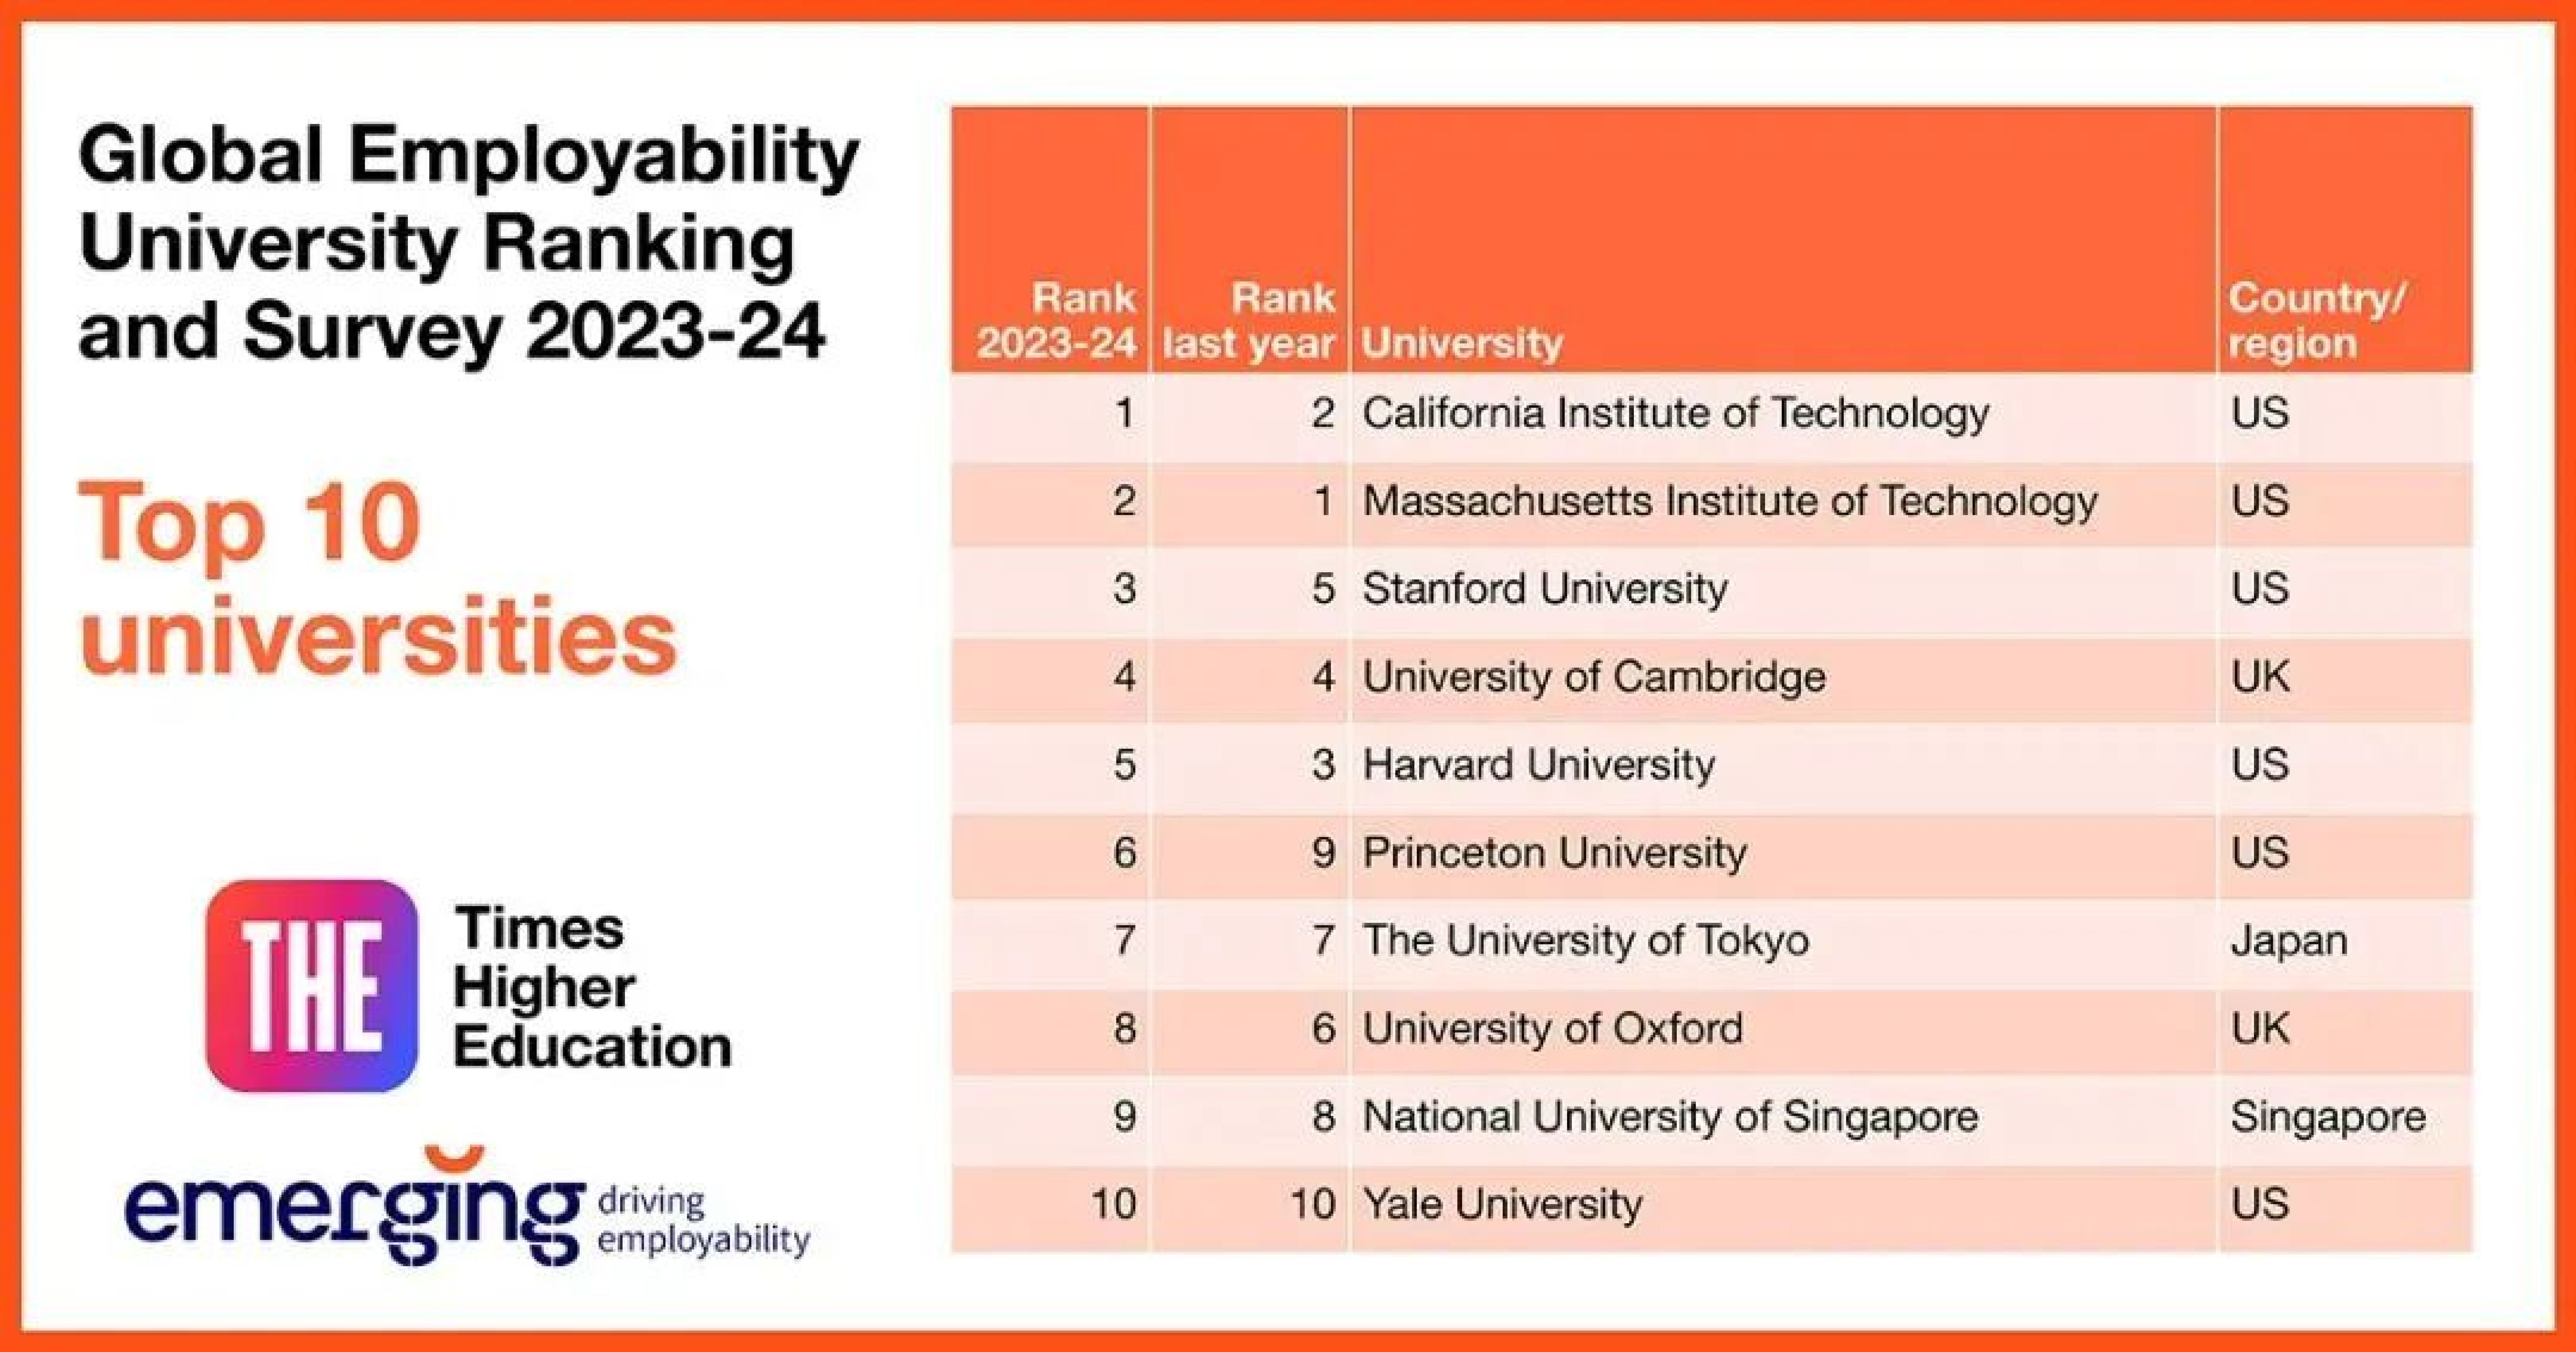 THE世界大学就业能力排名正式发布